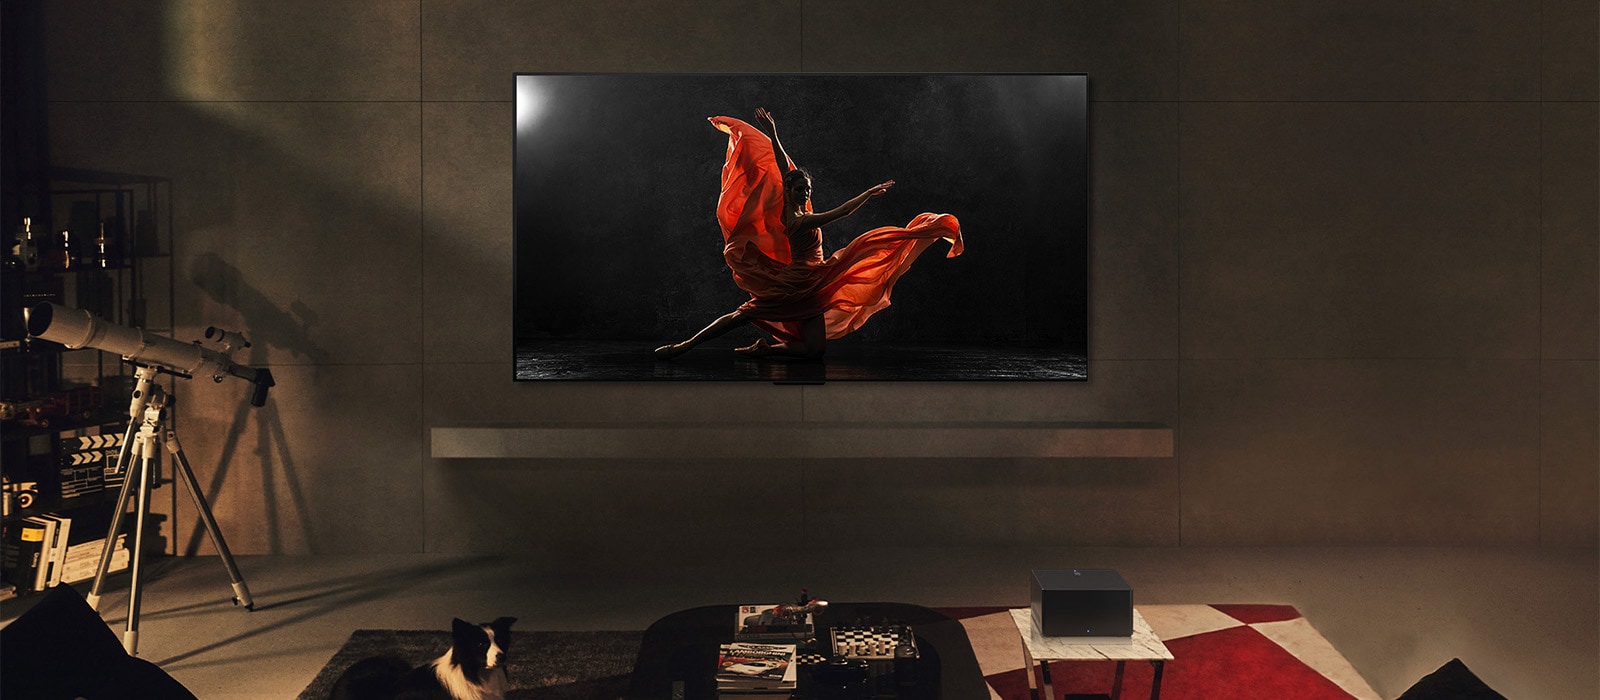 טלוויזיית LG SIGNATURE OLED M4 ו-LG Soundbar בחלל מגורים מודרני בשעות הלילה. תמונה של רקדנית על במה חשוכה מוצגת על פני המסך ברמת בהירות אופטימלית.